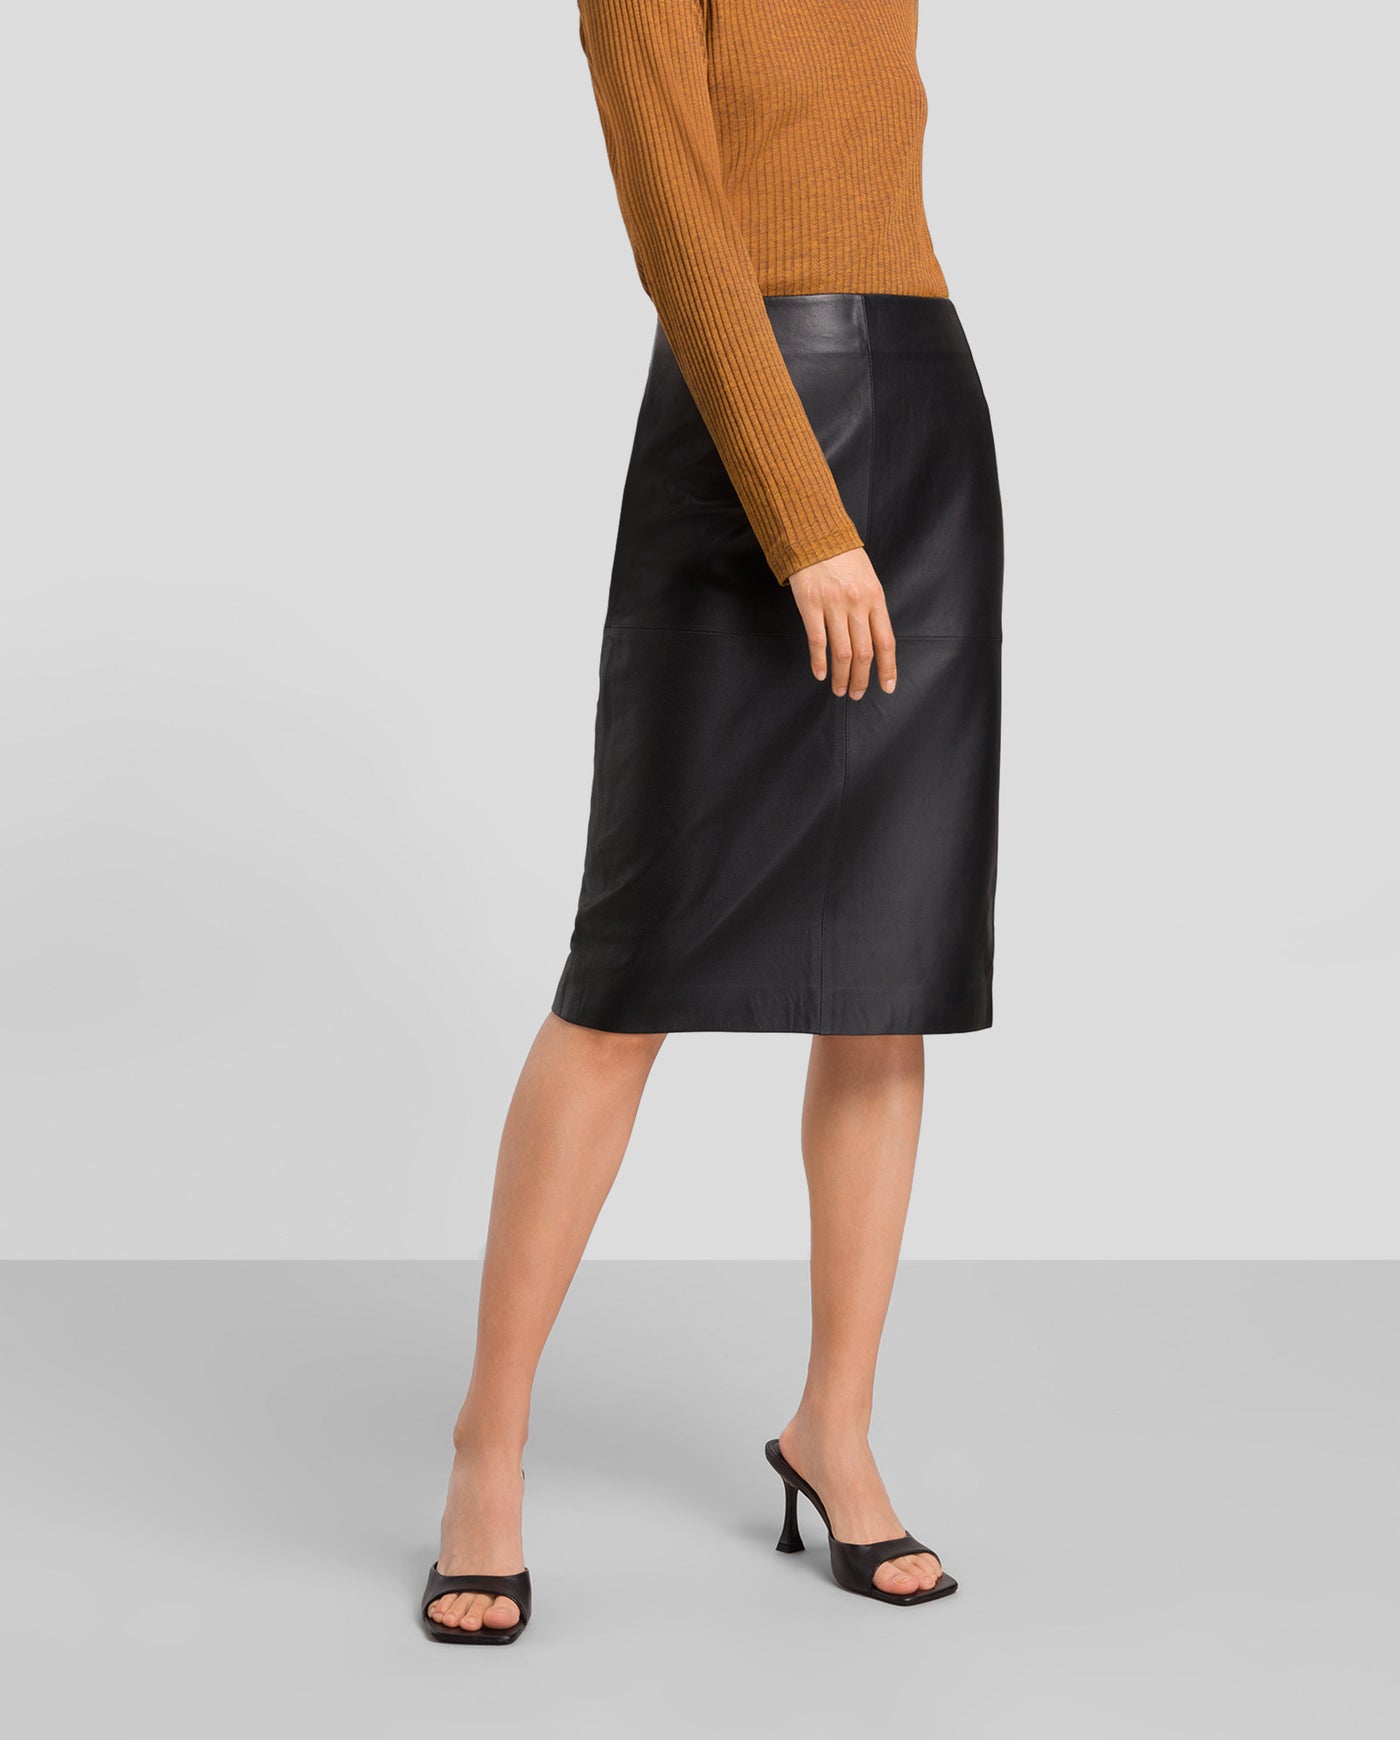 LIDIA Skirt